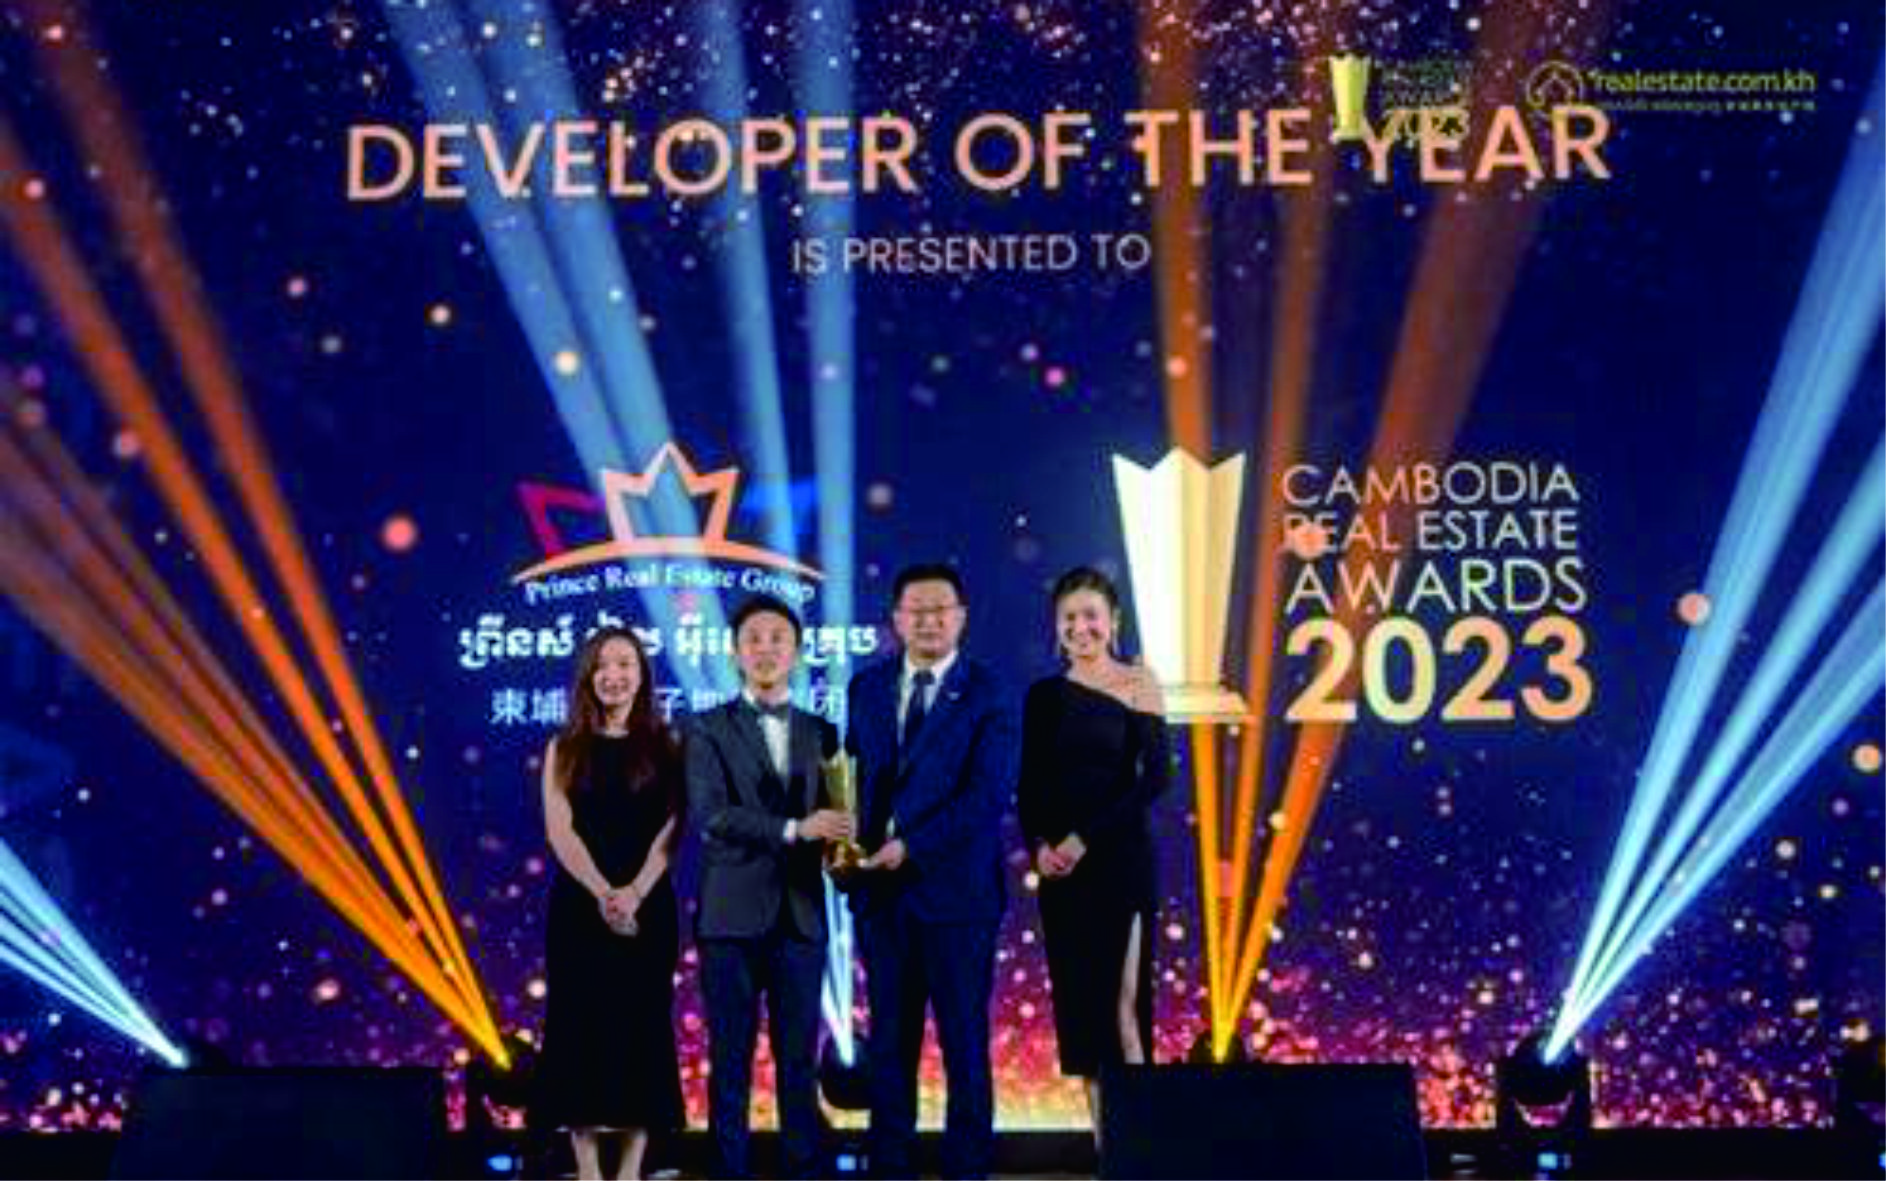 太子地产集团在柬埔寨第四届房地产年度大奖中荣获三大奖项